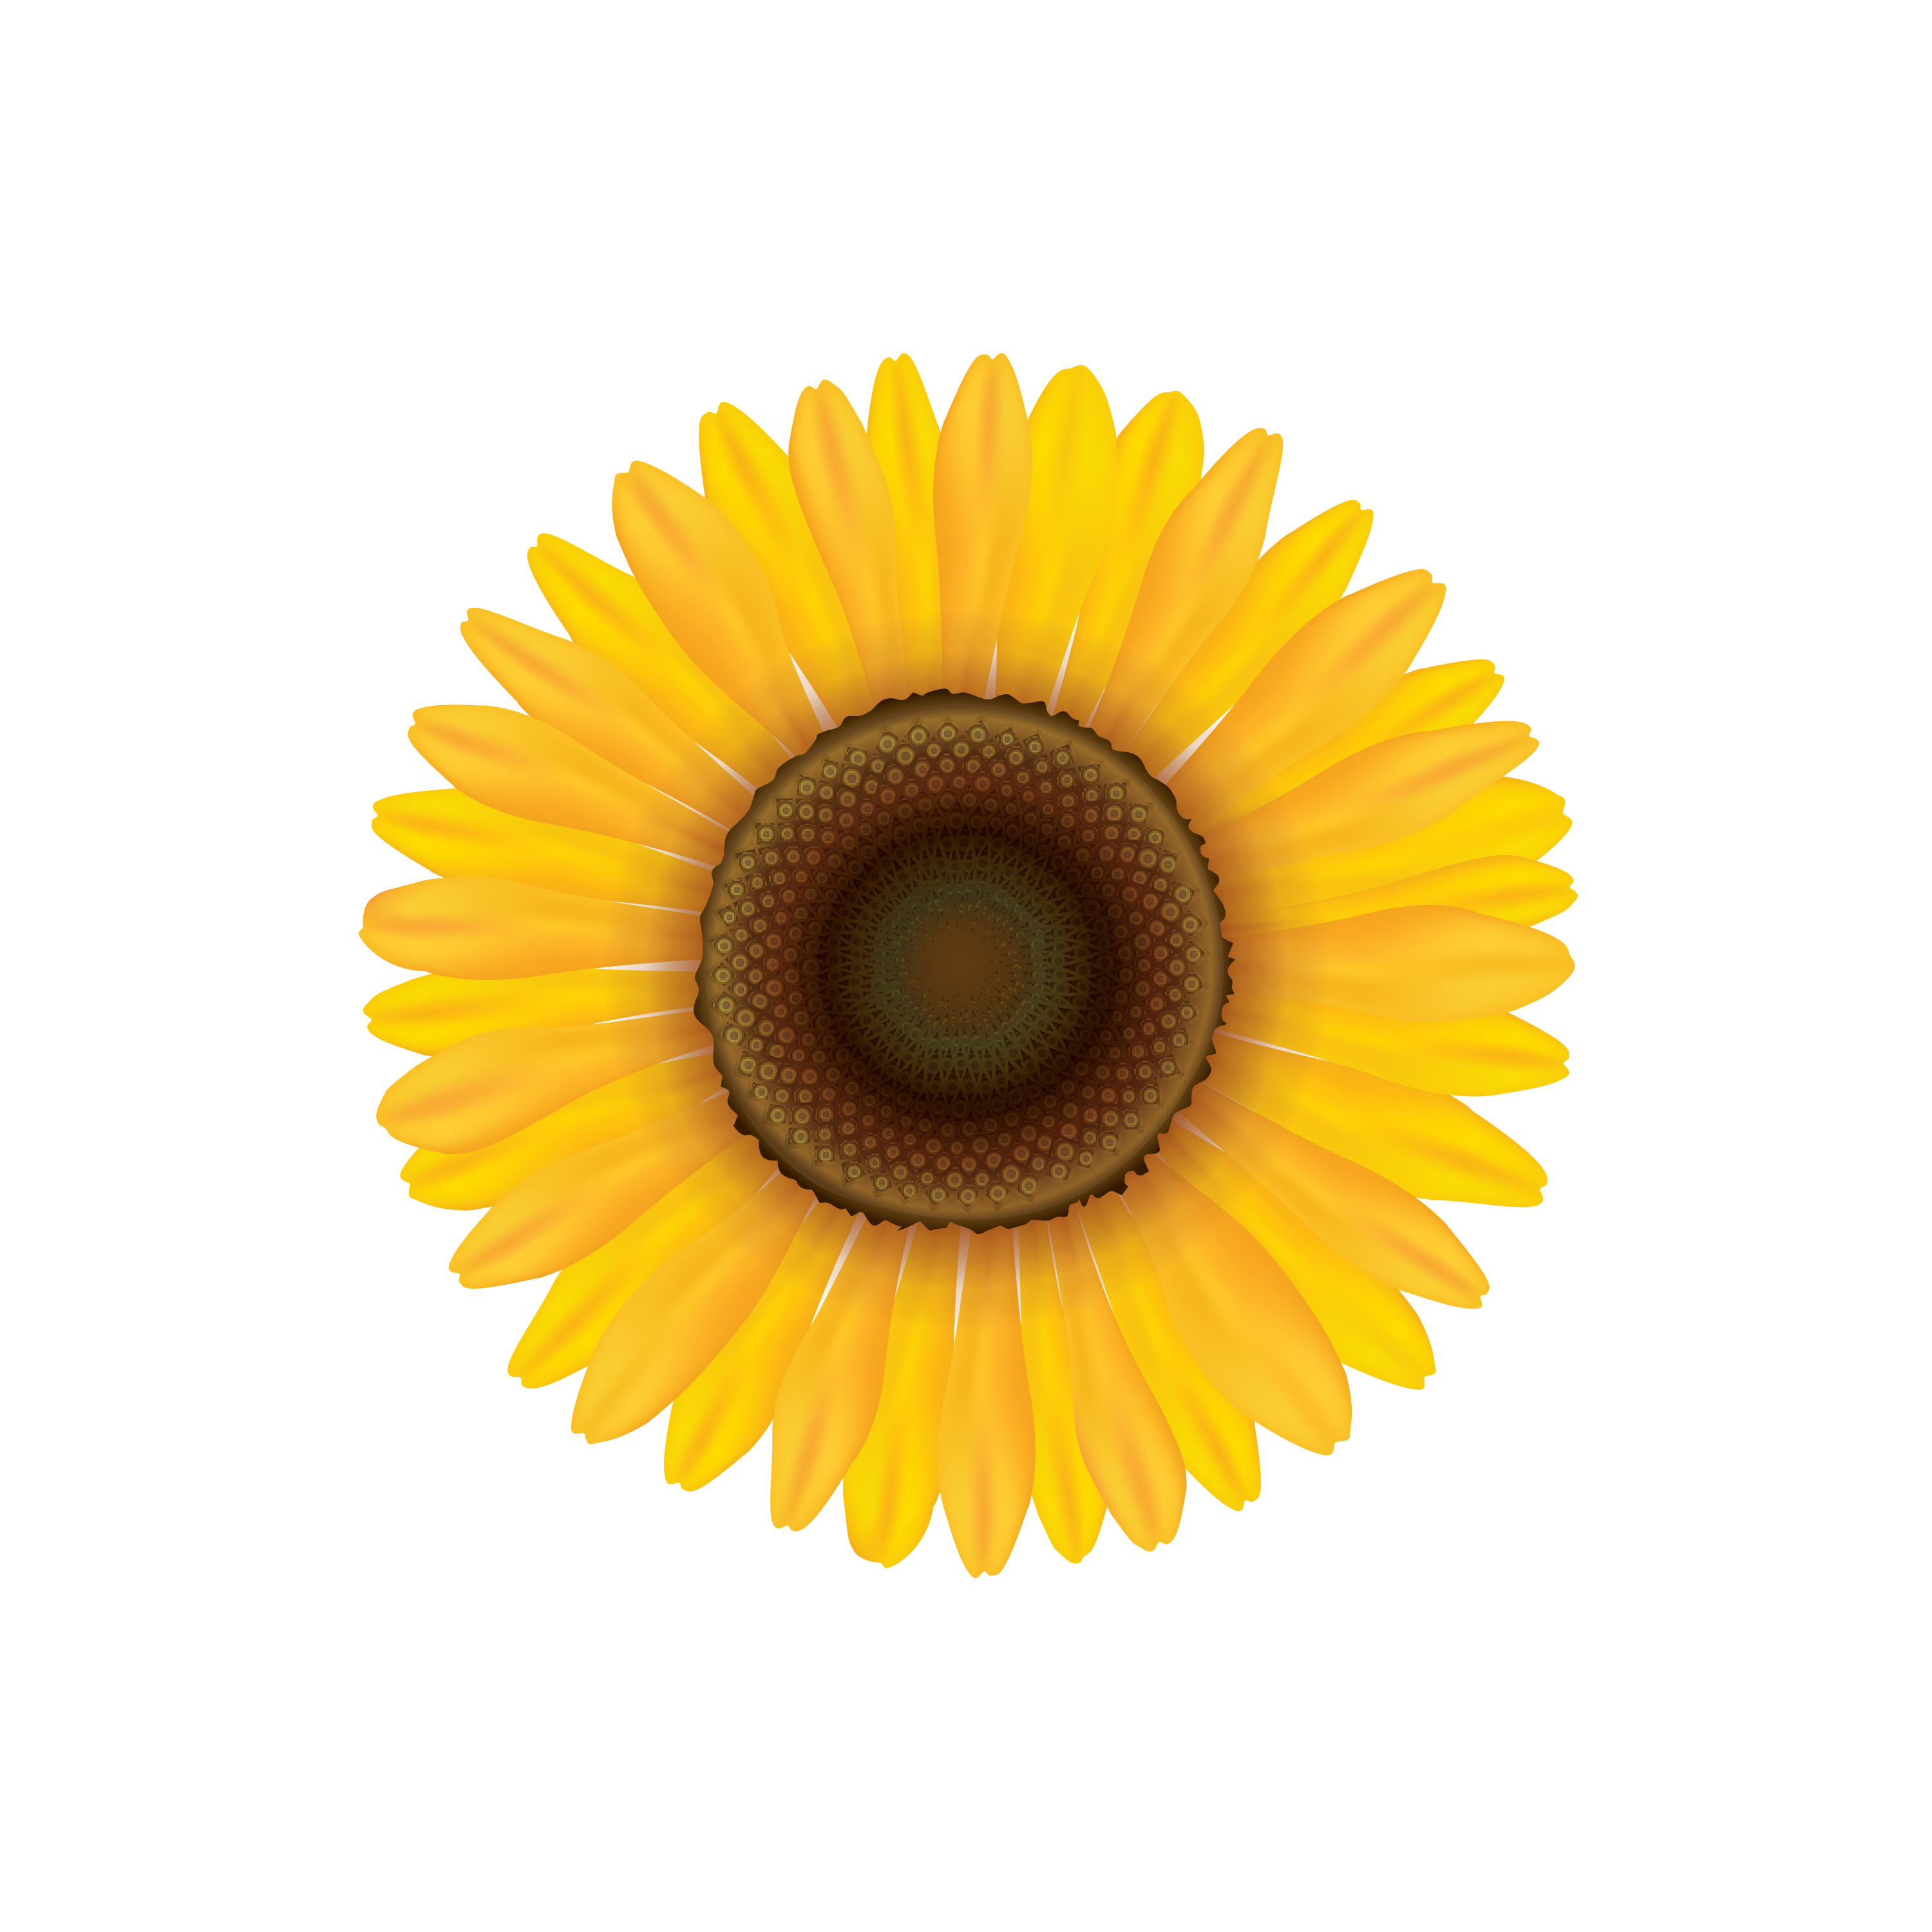 Sunflower. Summer flower isolated. Vecor illustration 524927 - Download